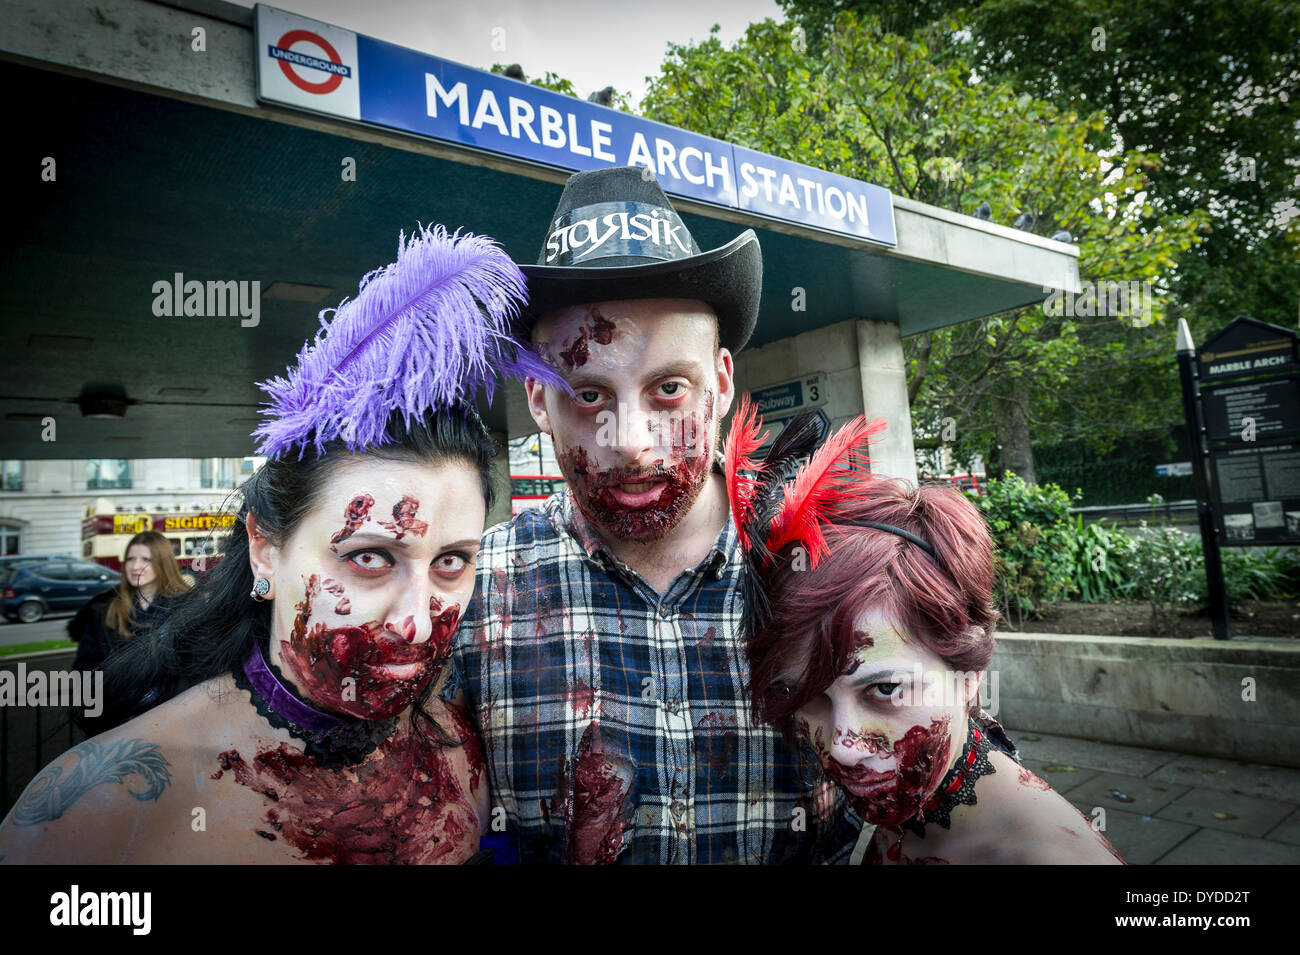 Trois participants dans le rapport annuel d'invasion de zombies de Londres la collecte de fonds pour les sans-abri St Mungo's la charité. Banque D'Images